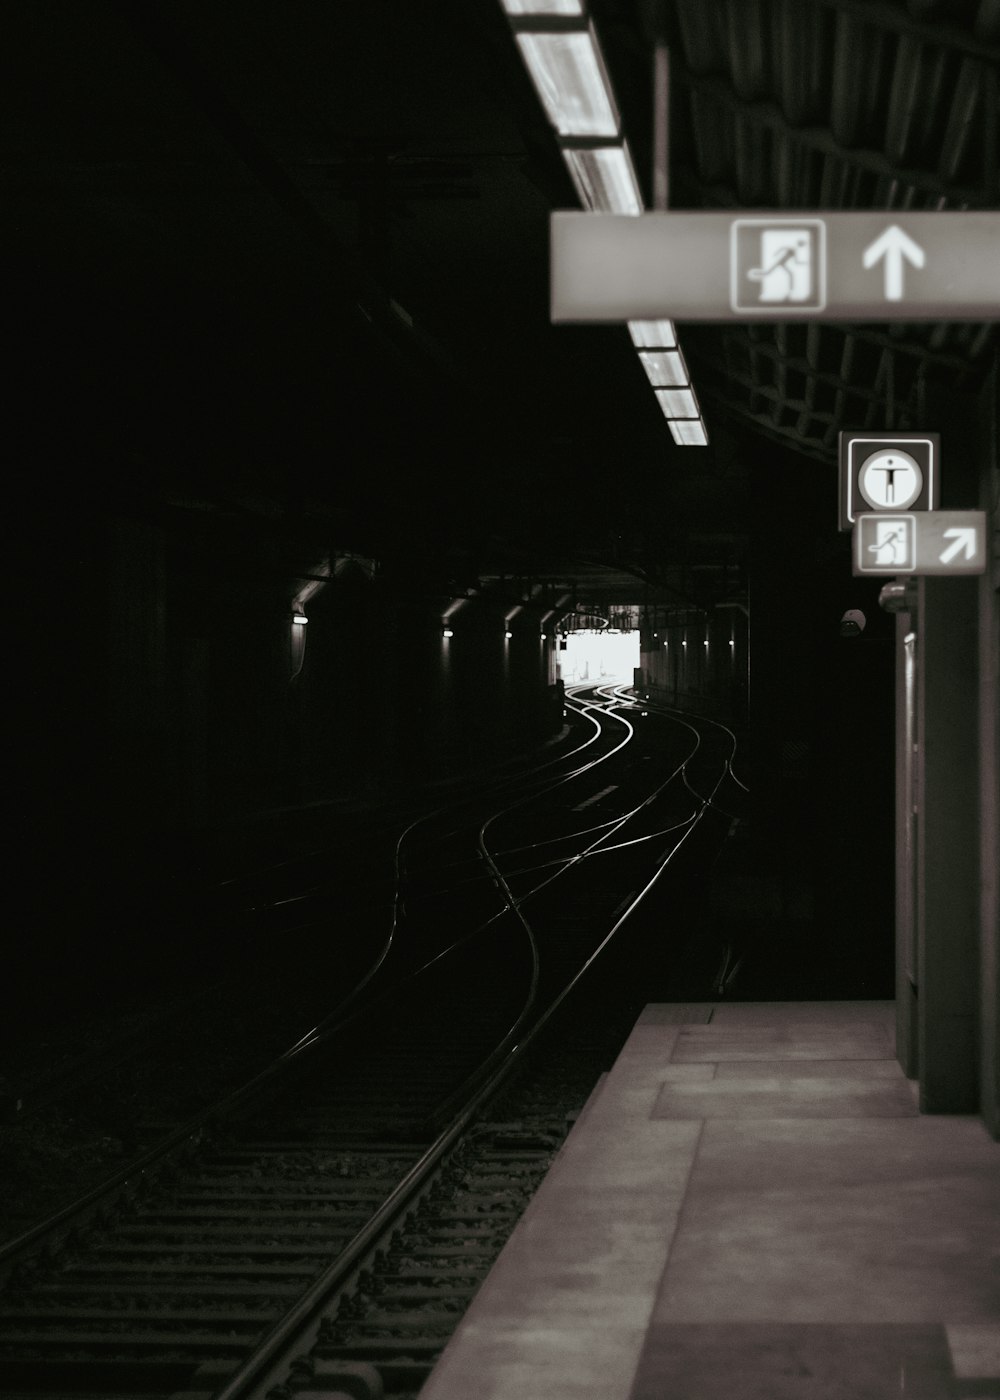 uma foto em preto e branco de uma estação de trem